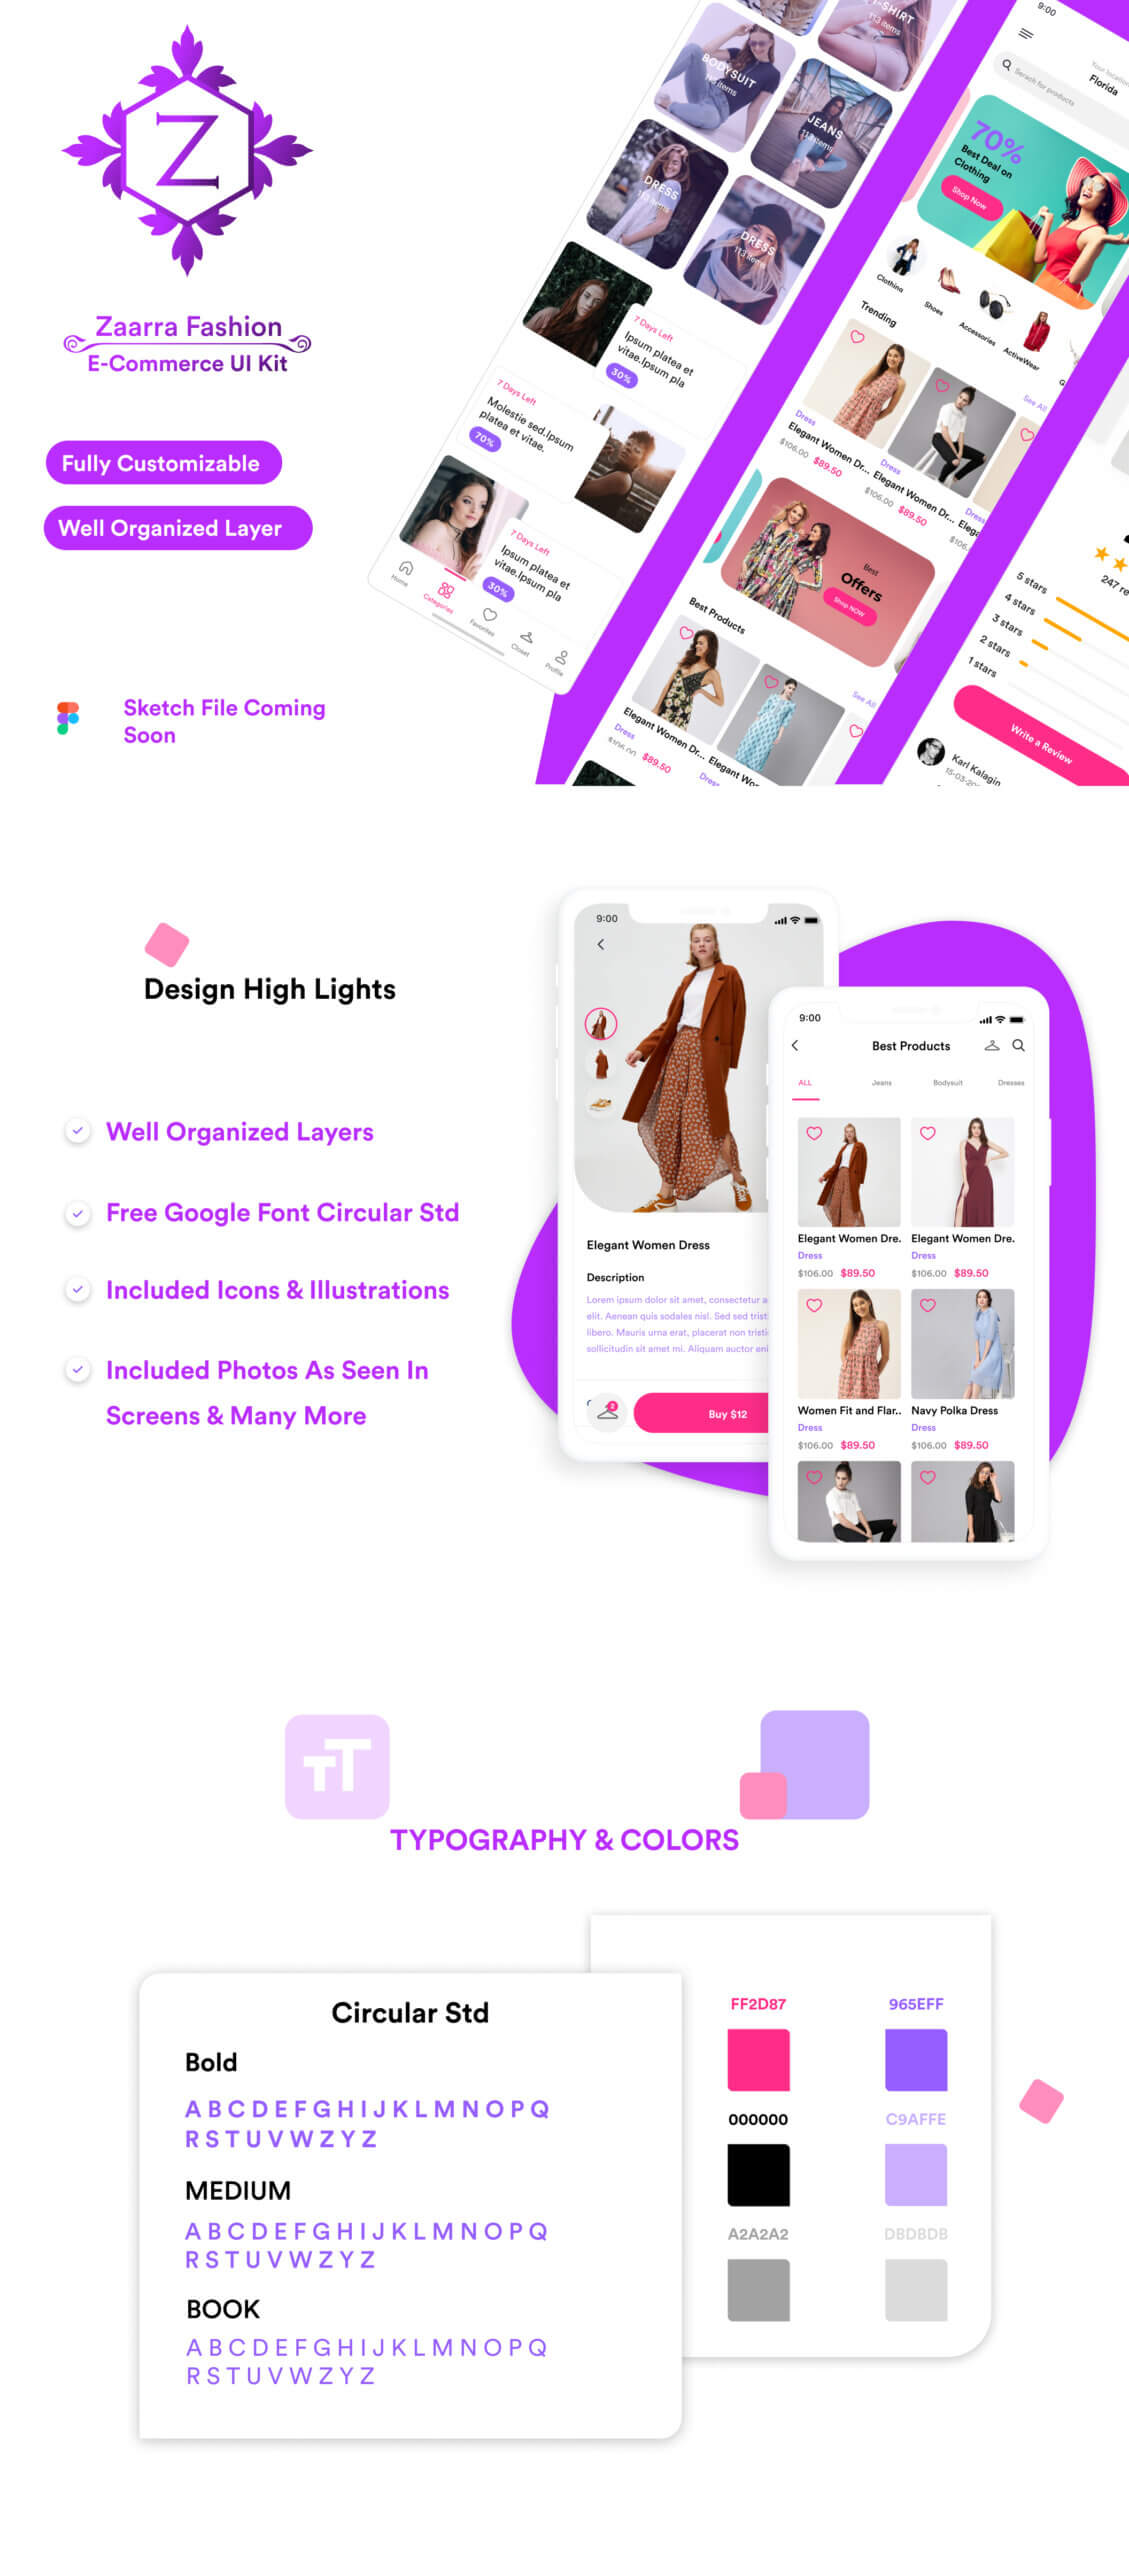 时尚电子商务UI套件模版素材下载 Zaara Fashion ecommerce UI Kit插图1